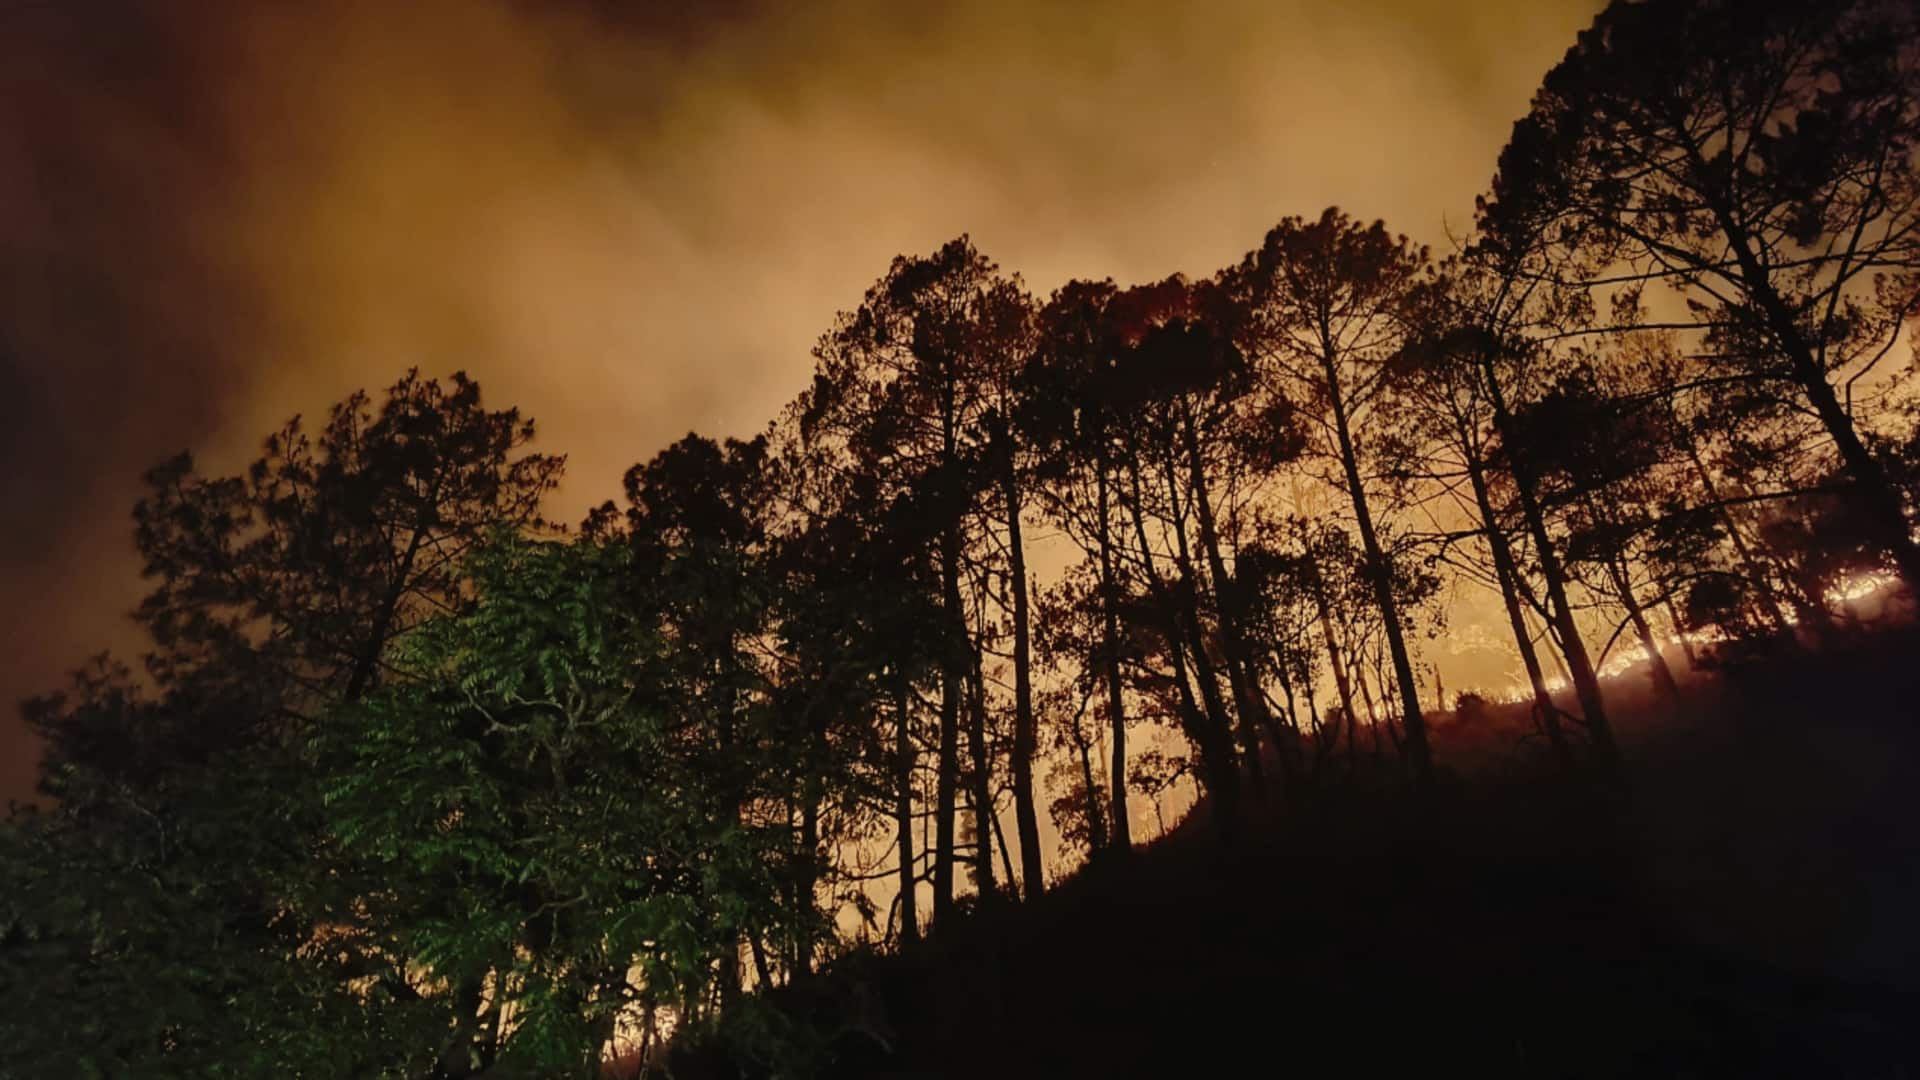 #NewsBytesExplainer: उत्तराखंड के जंगलों में कैसे लगी आग और तेजी से क्यों फैल रही है?